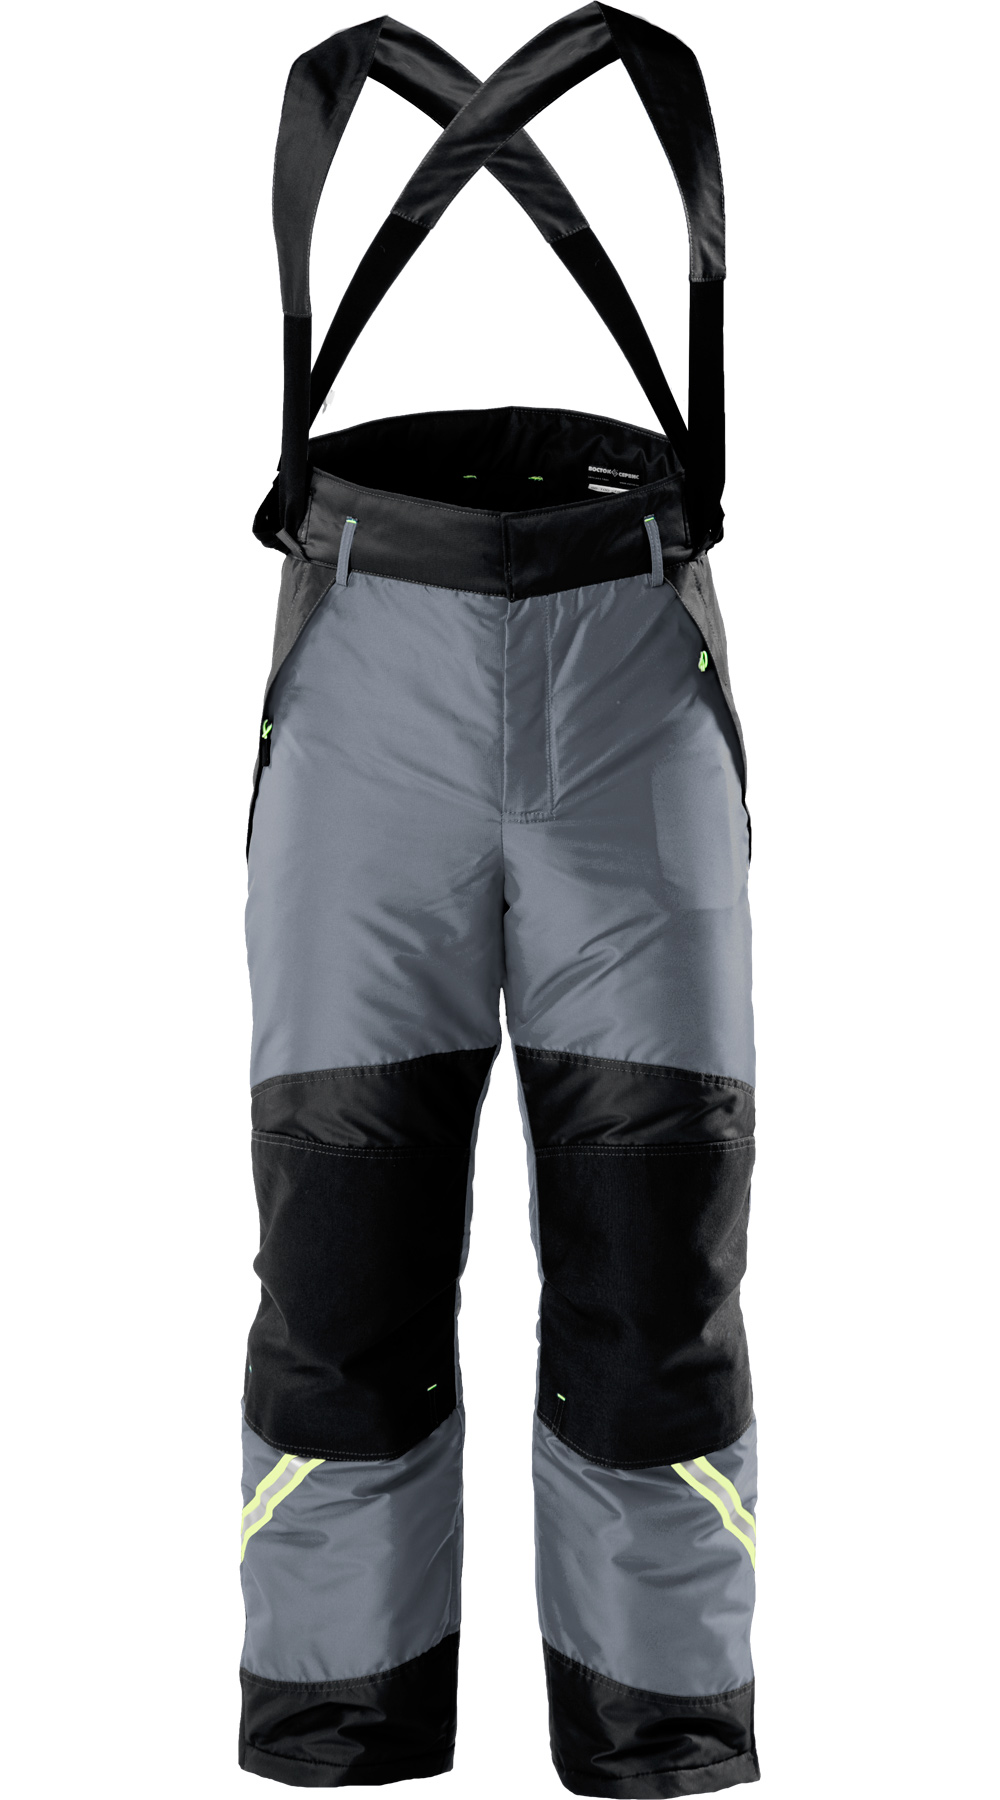 Зимние брюки "УРАН" мужские, утепленные, цвет: серый с черным, ткань: 100% ПЭ